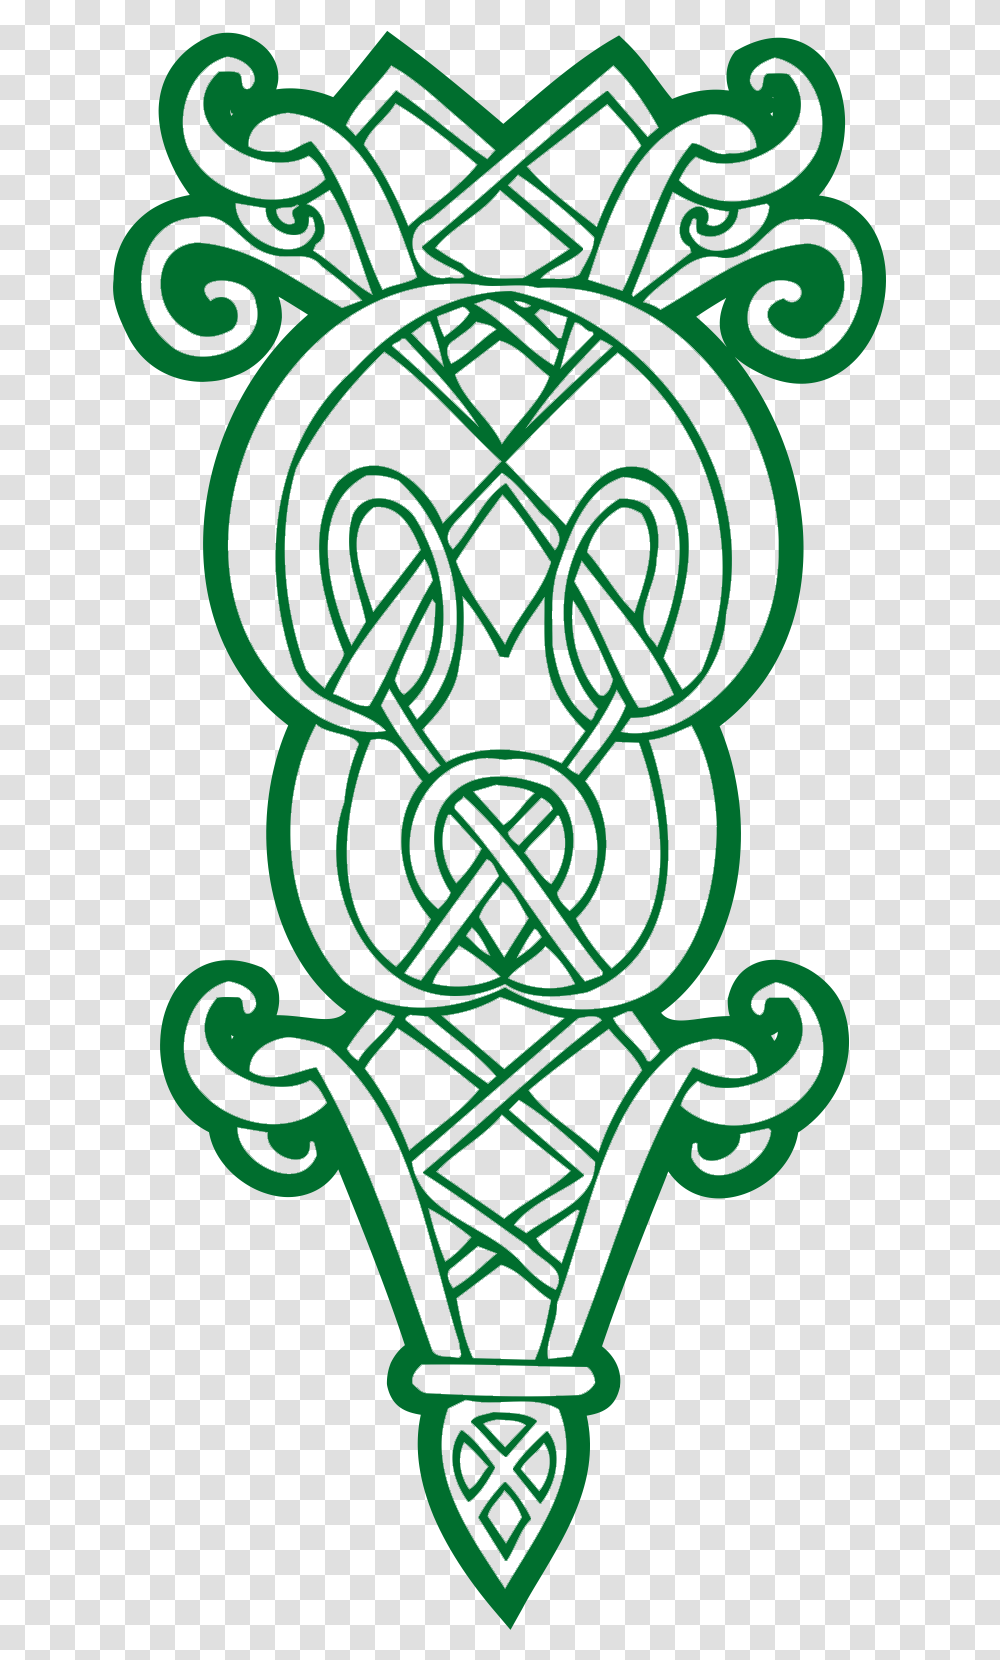 Celtic Ornament Vector Free Cricket Vector Graphics, Green, Logo Transparent Png